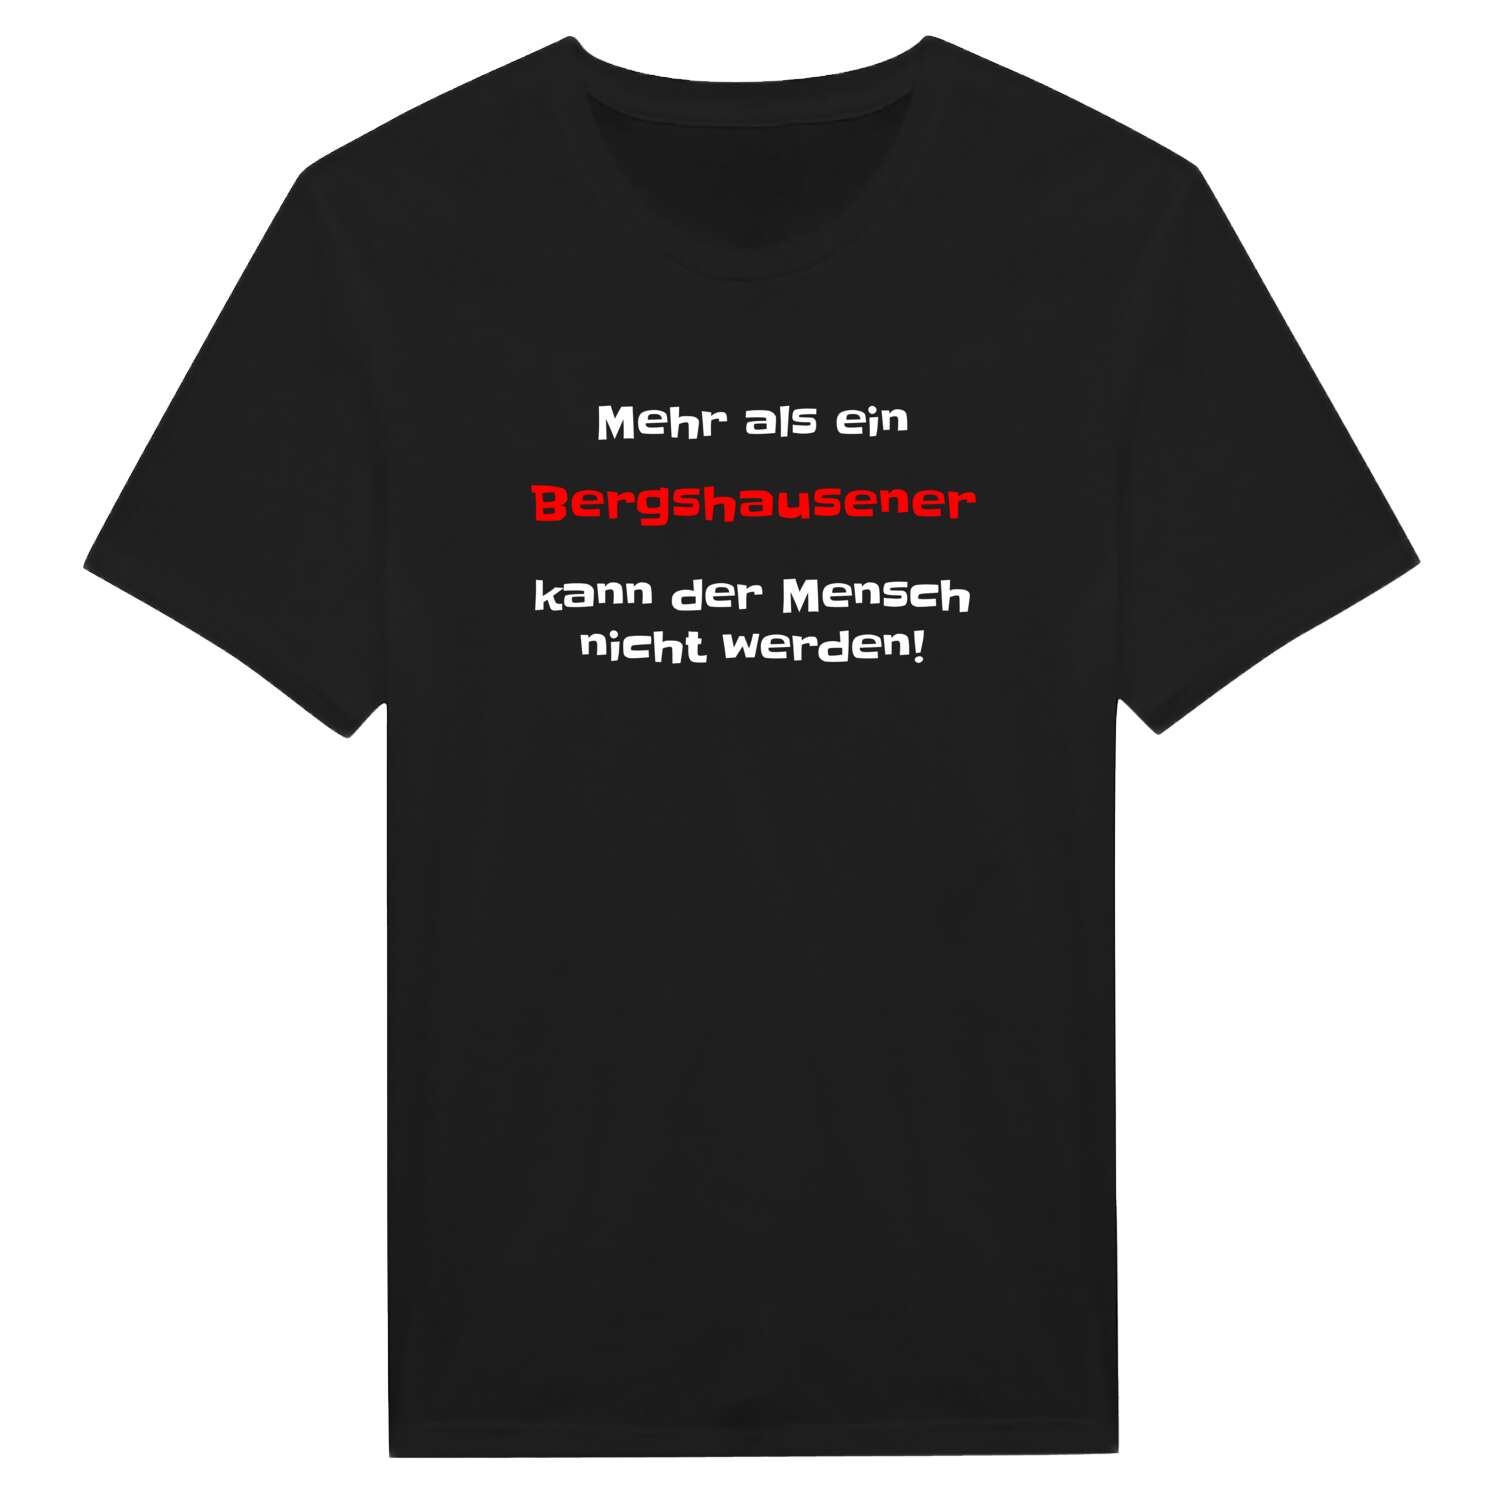 Bergshausen T-Shirt »Mehr als ein«